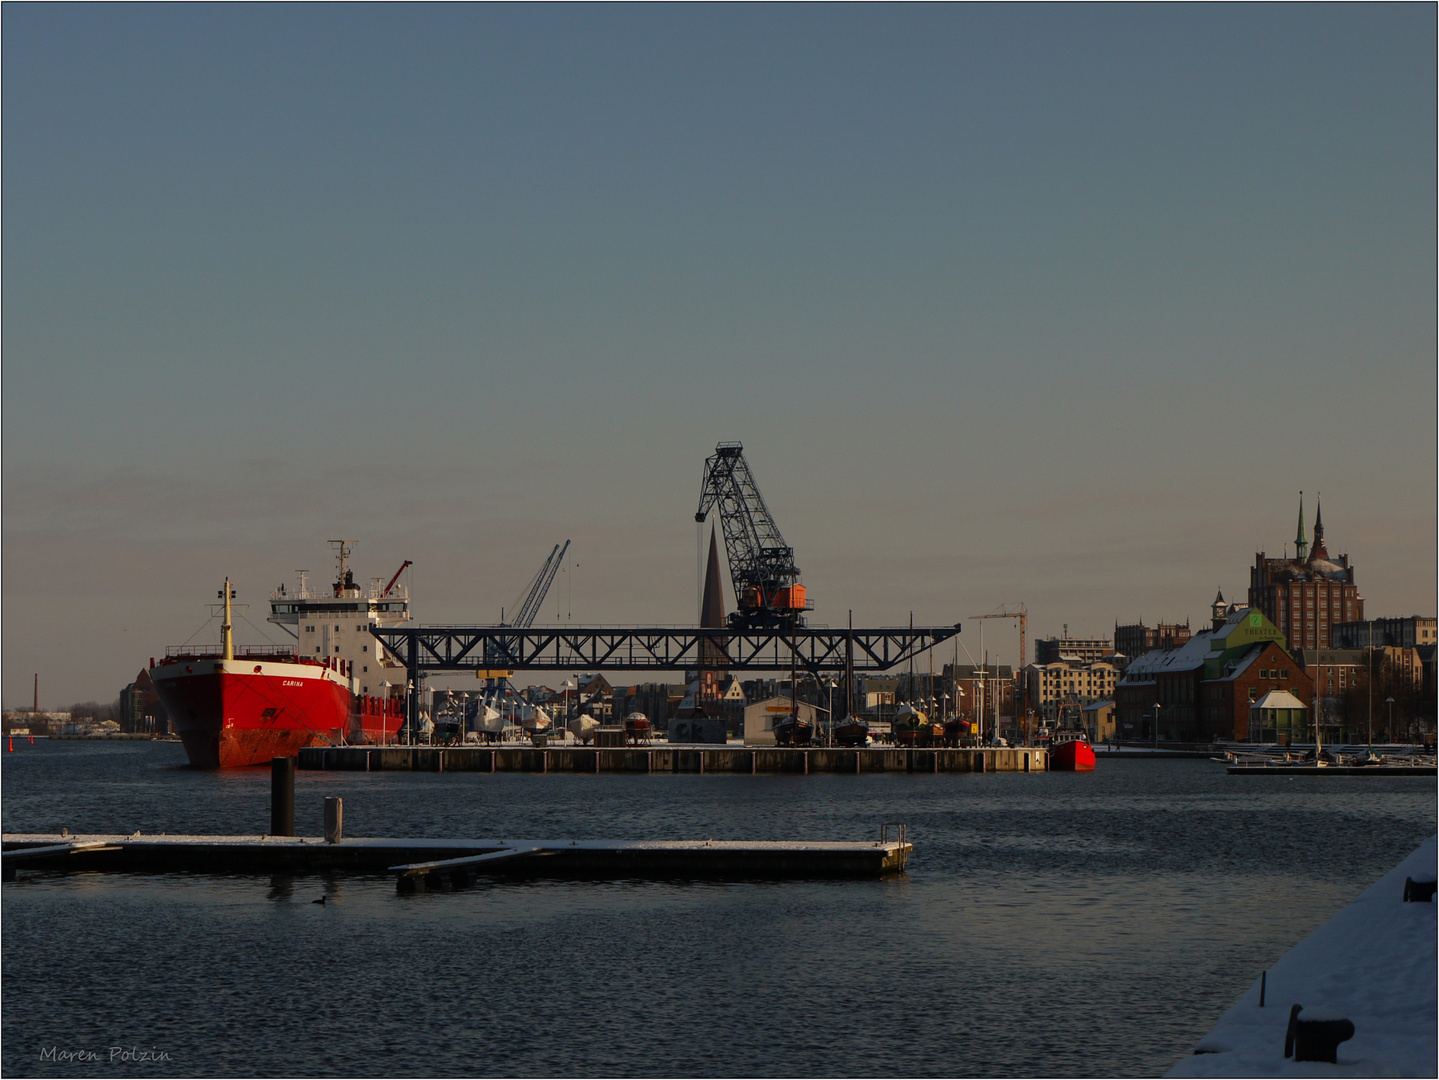 Stadthafen Rostock im Abendlicht